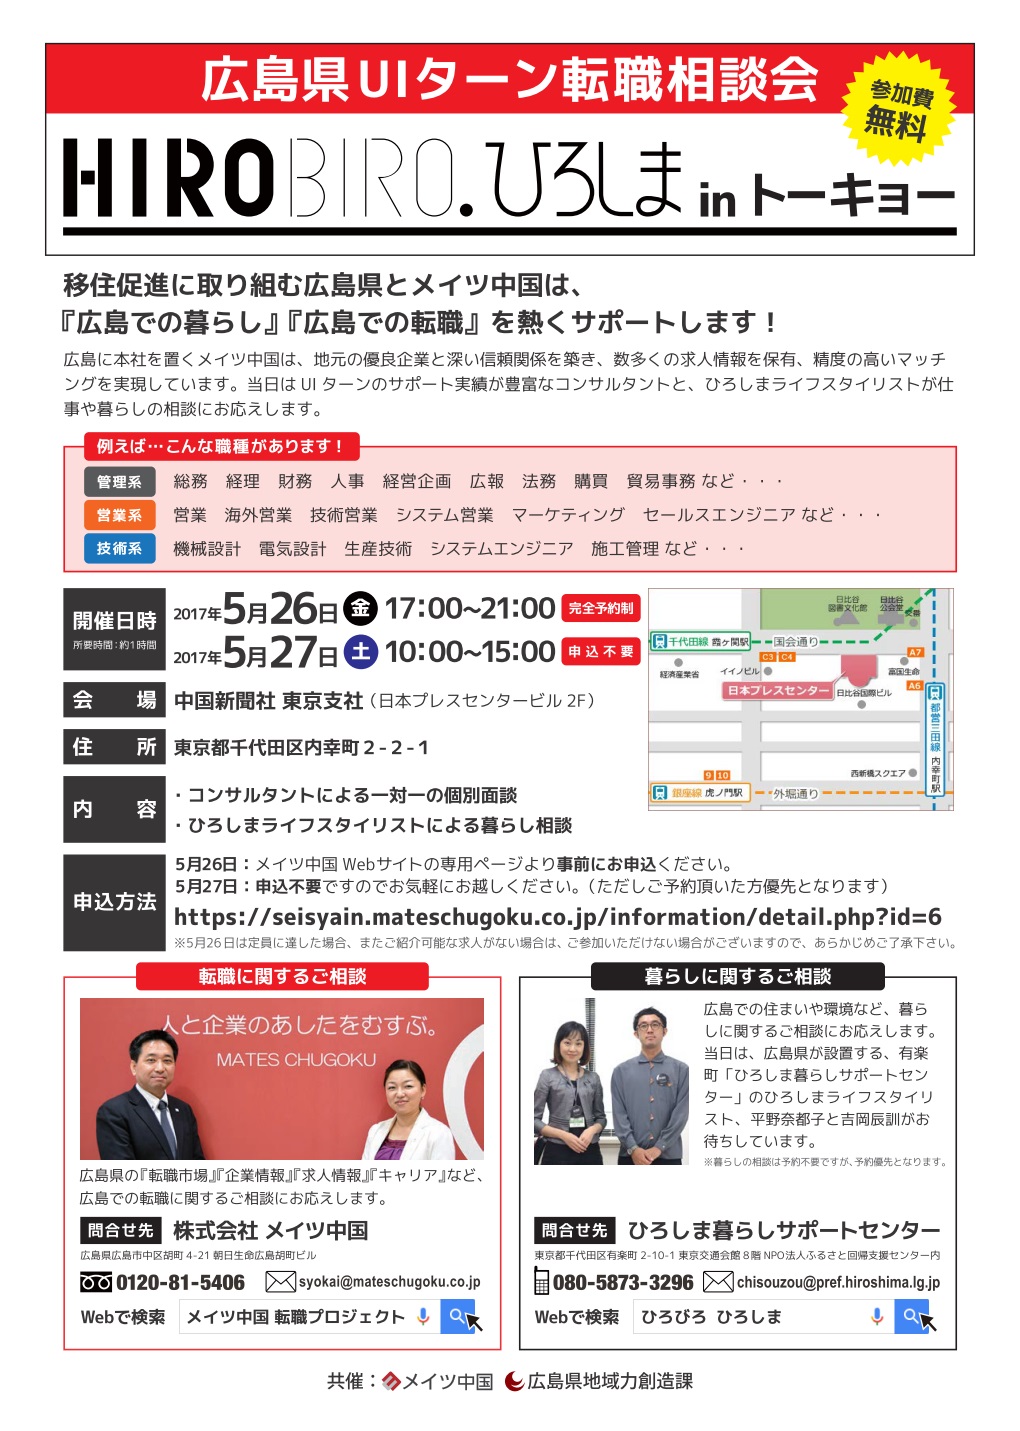 【東京・内幸町】HIROBIROひろしま仕事と暮らしの相談会を開催します！ | 移住関連イベント情報